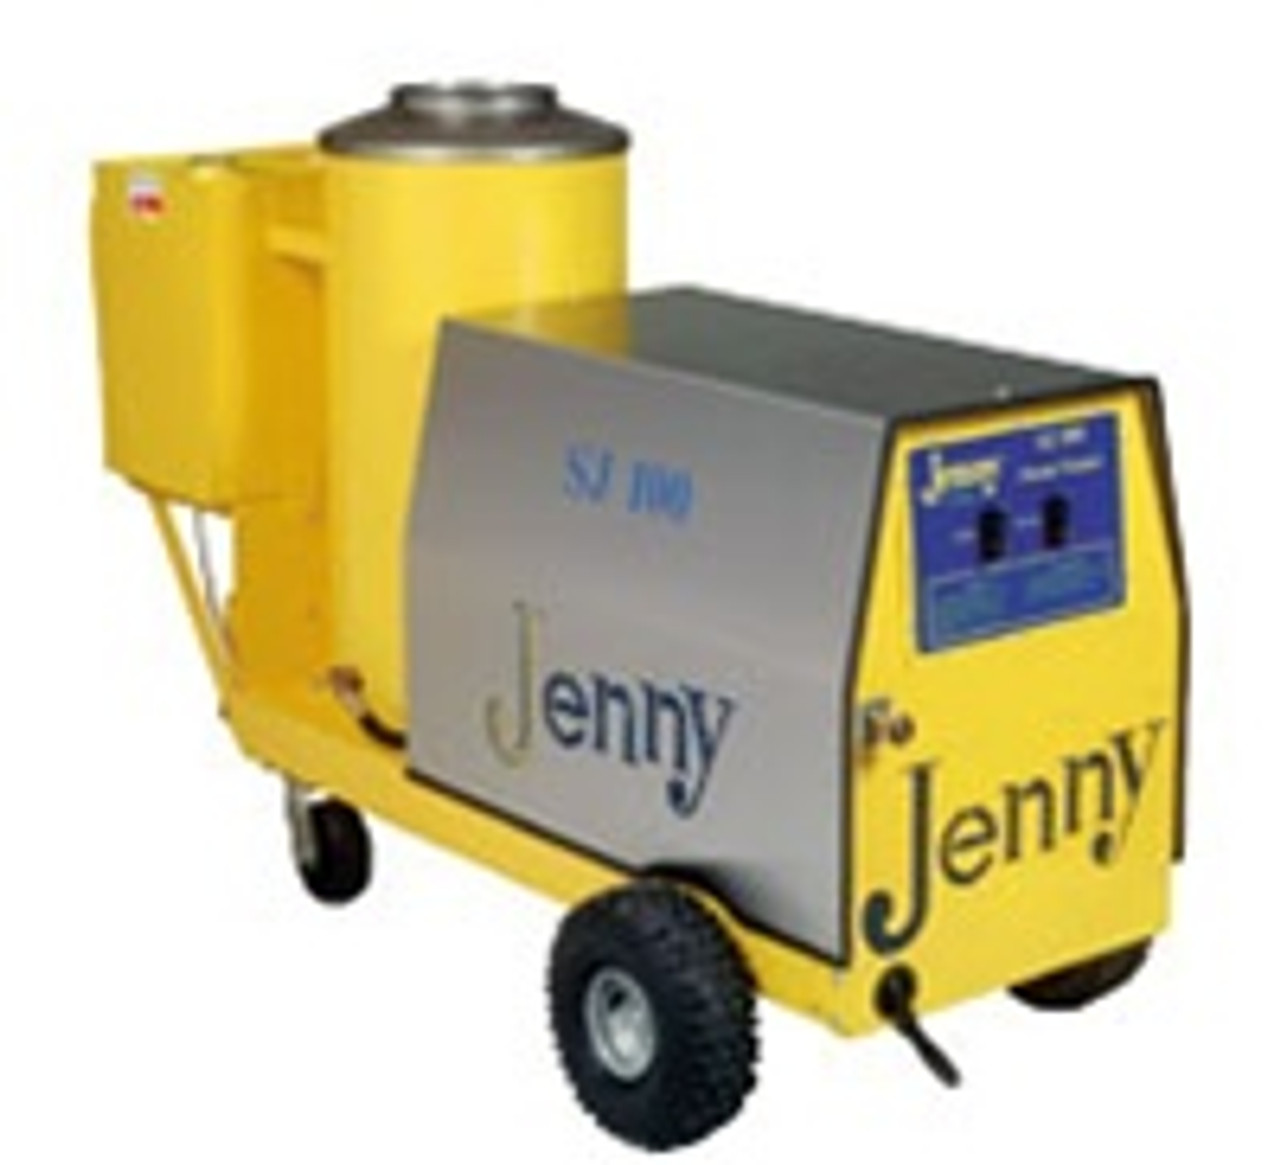 Steam Jenny Steam Cleaner Model SJ 100-OEP 575v, 60htz, 3 Phase - 1hp